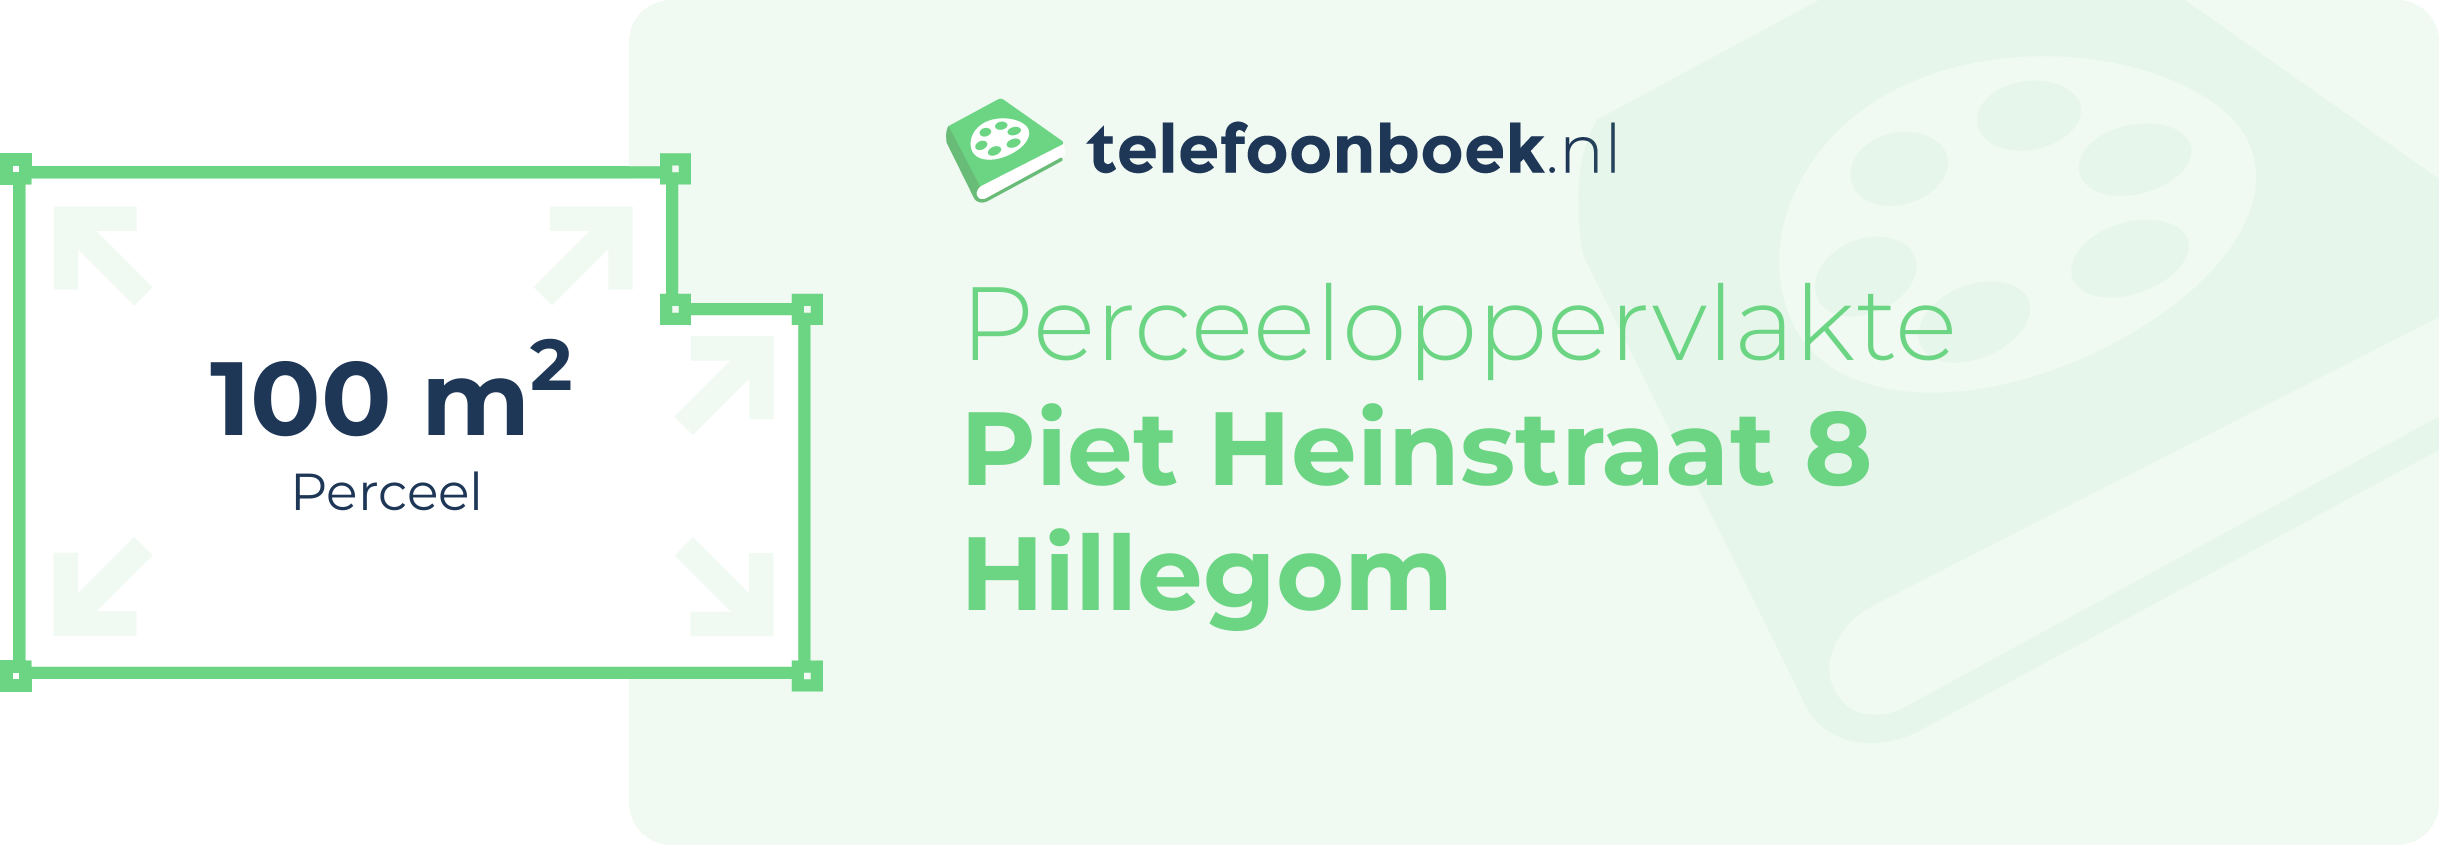 Perceeloppervlakte Piet Heinstraat 8 Hillegom